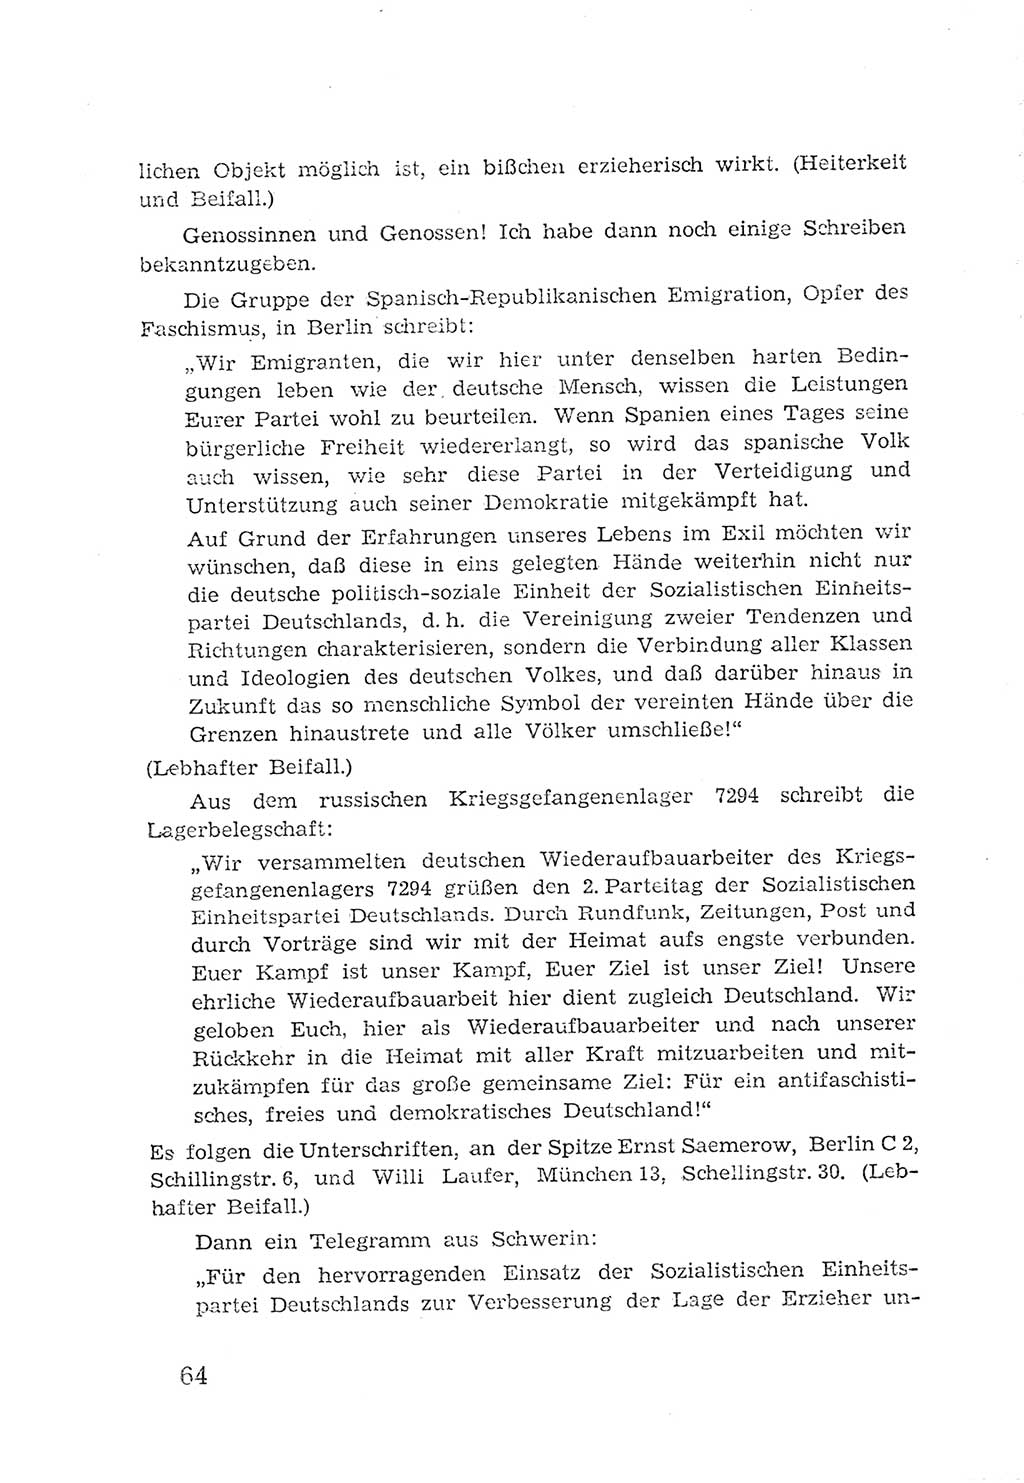 Protokoll der Verhandlungen des 2. Parteitages der Sozialistischen Einheitspartei Deutschlands (SED) [Sowjetische Besatzungszone (SBZ) Deutschlands] 1947, Seite 64 (Prot. Verh. 2. PT SED SBZ Dtl. 1947, S. 64)